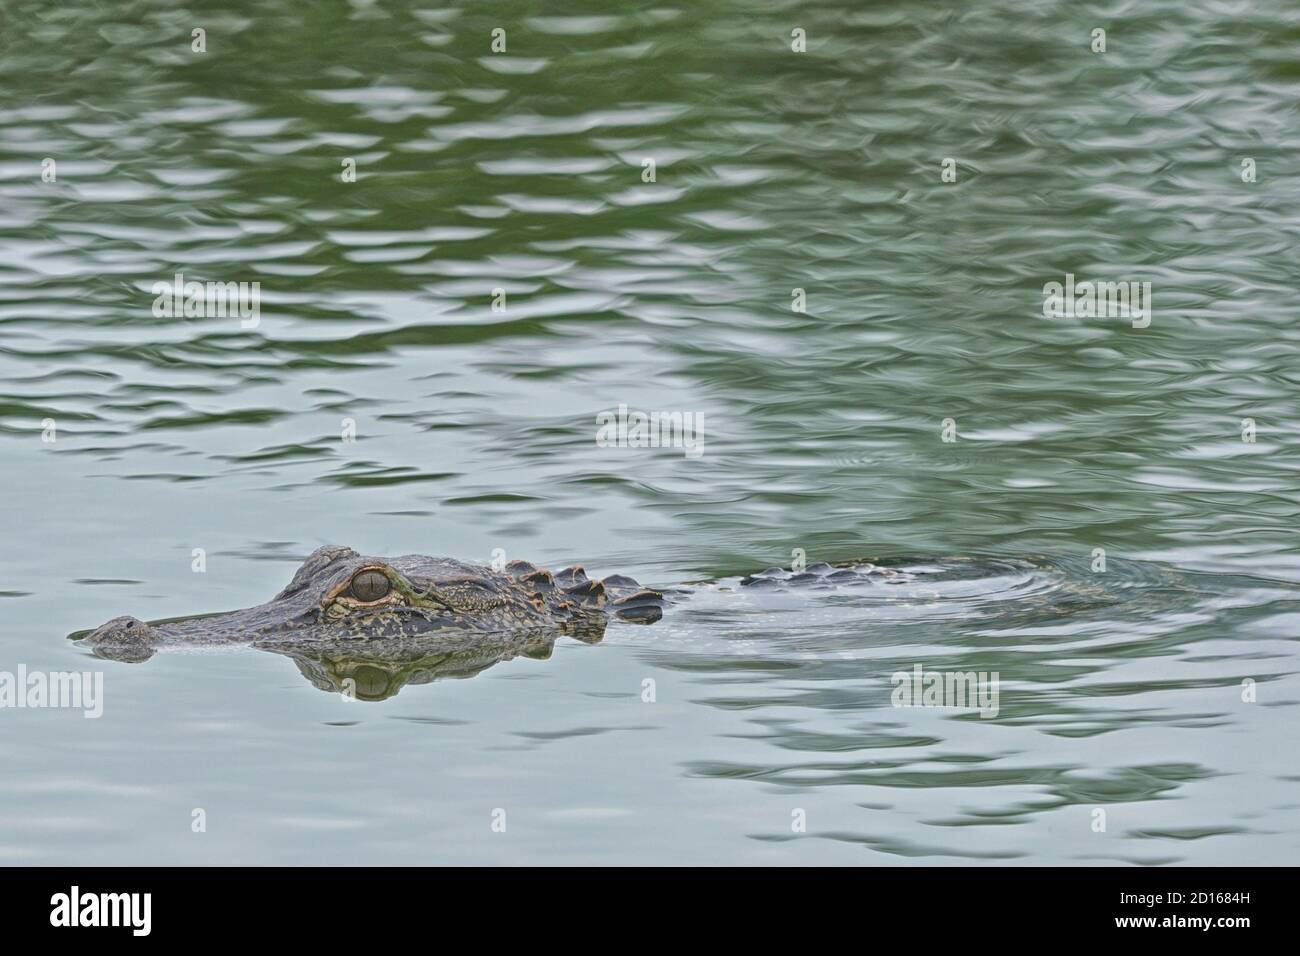 Cocodrilo americano, Alligator misssippiensis, nadando en una zona residencial. Foto de stock